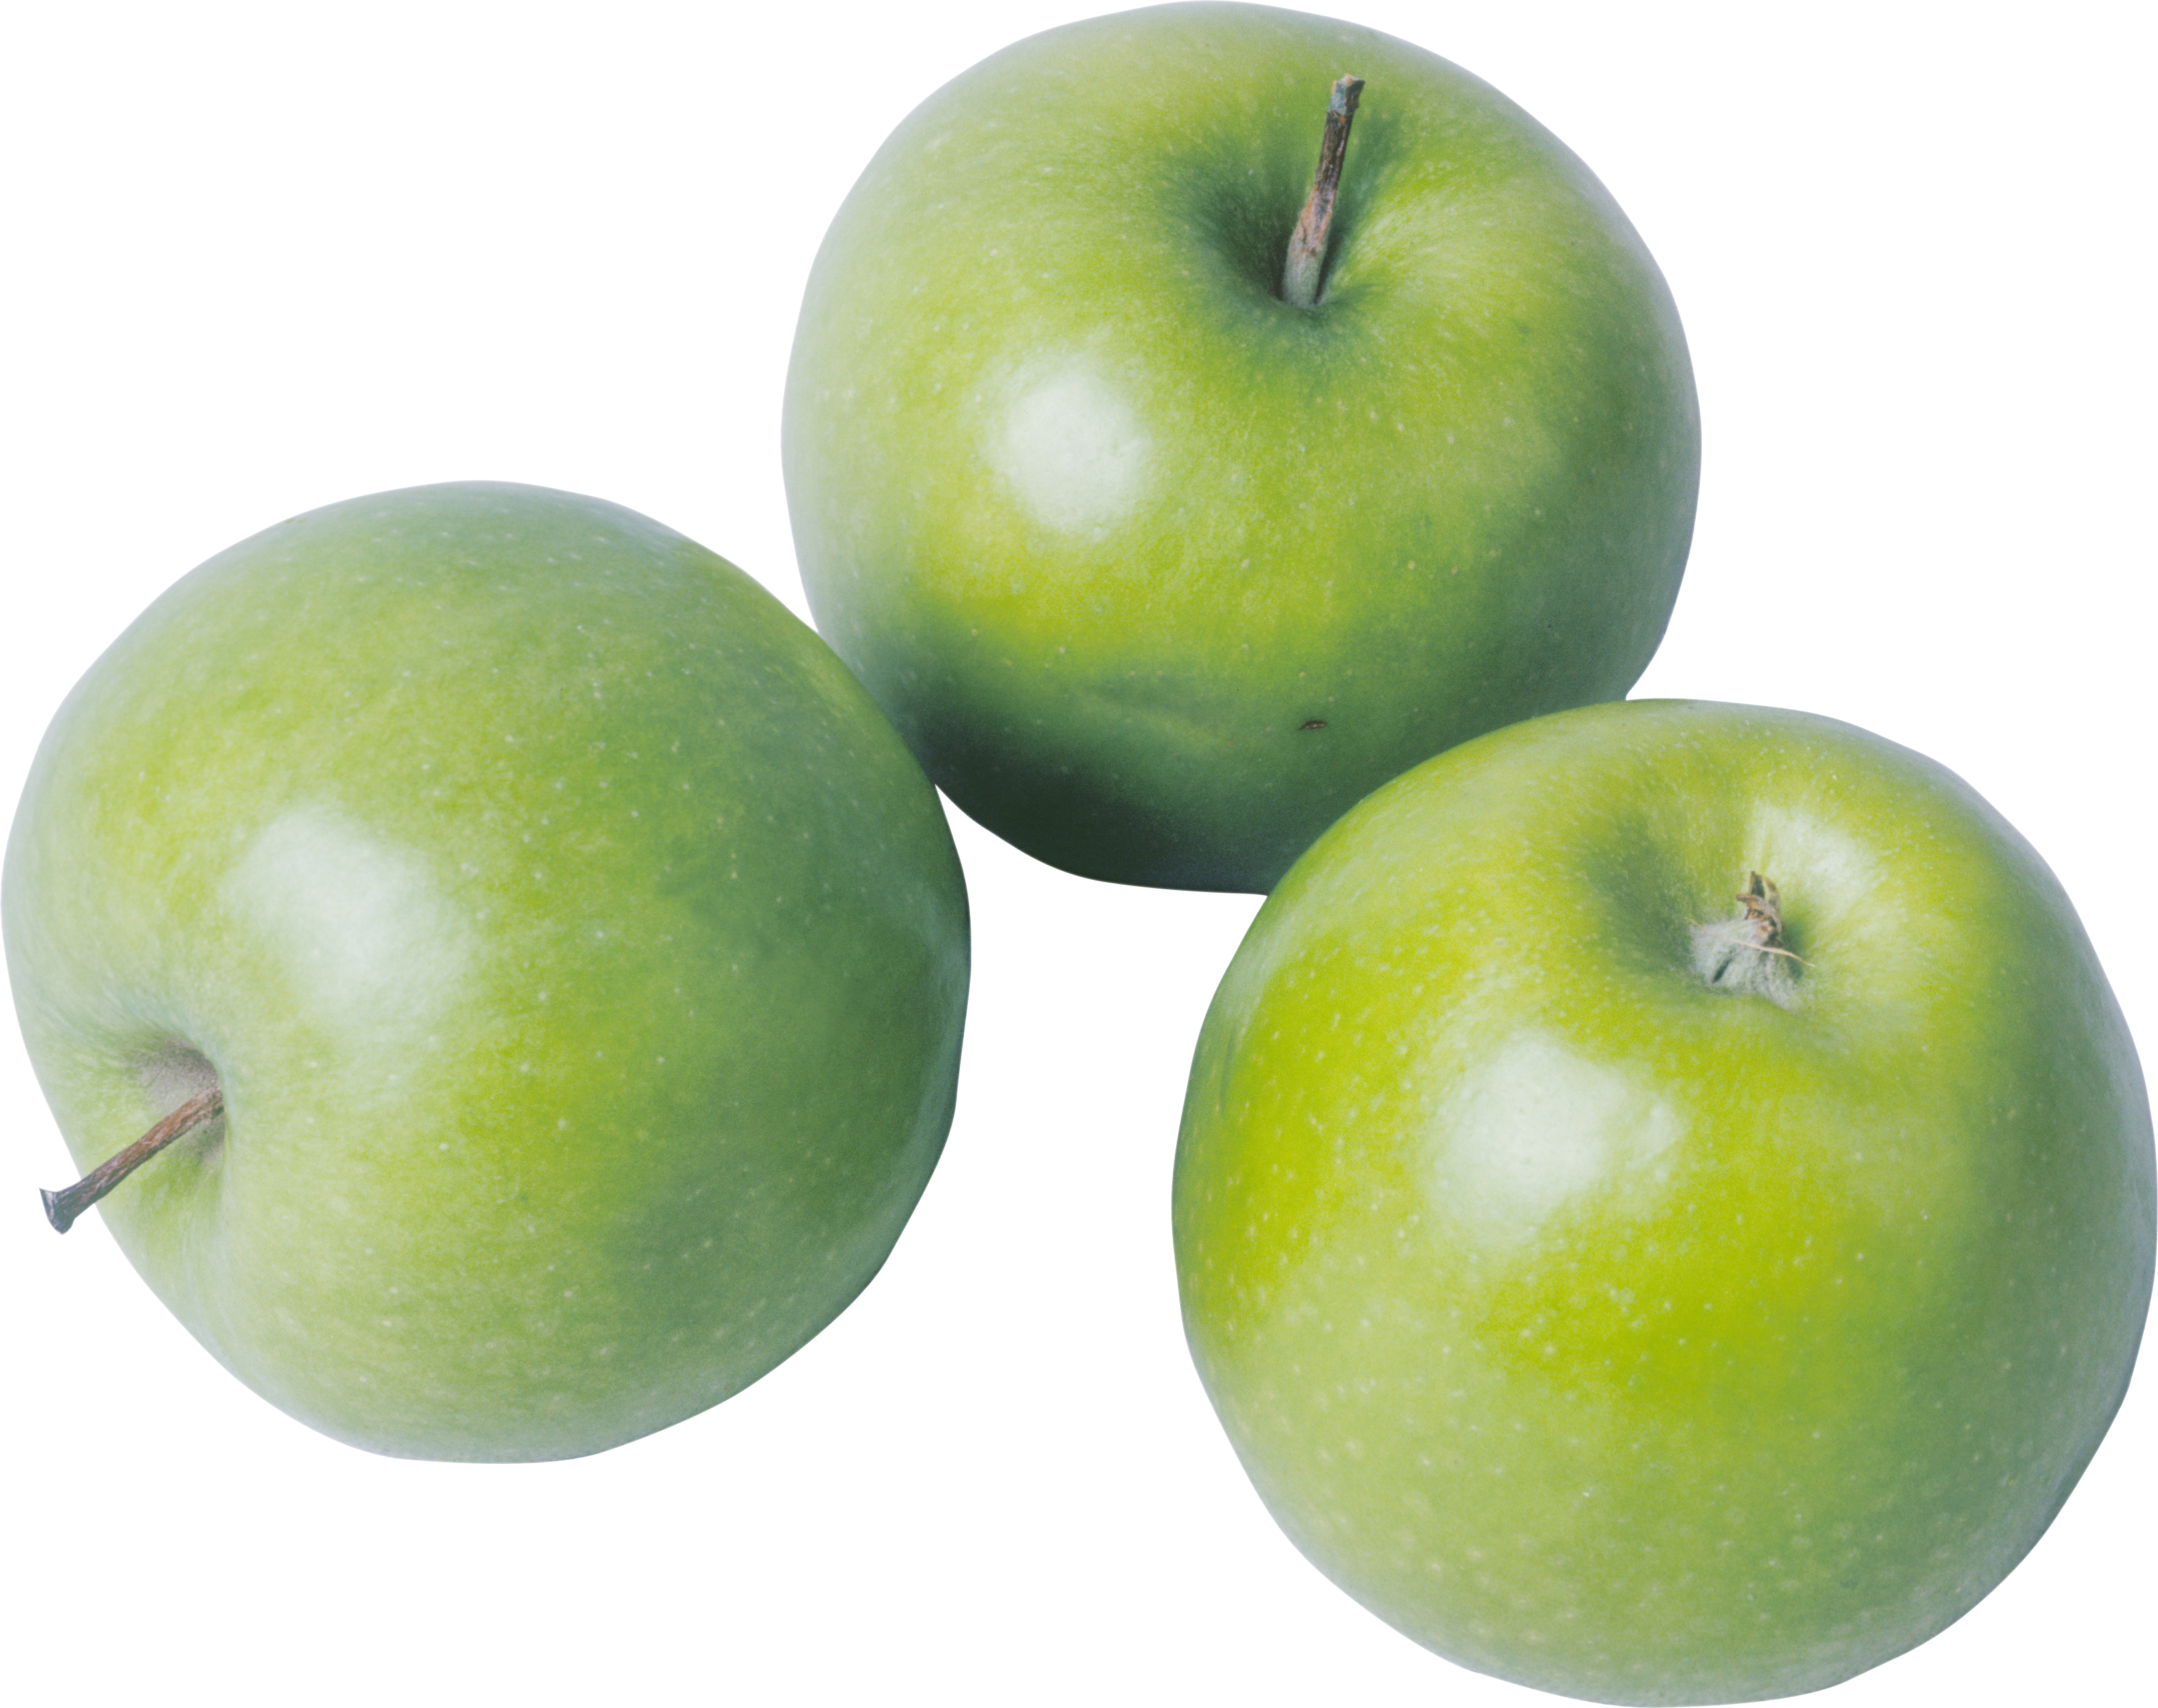 Tiga apel